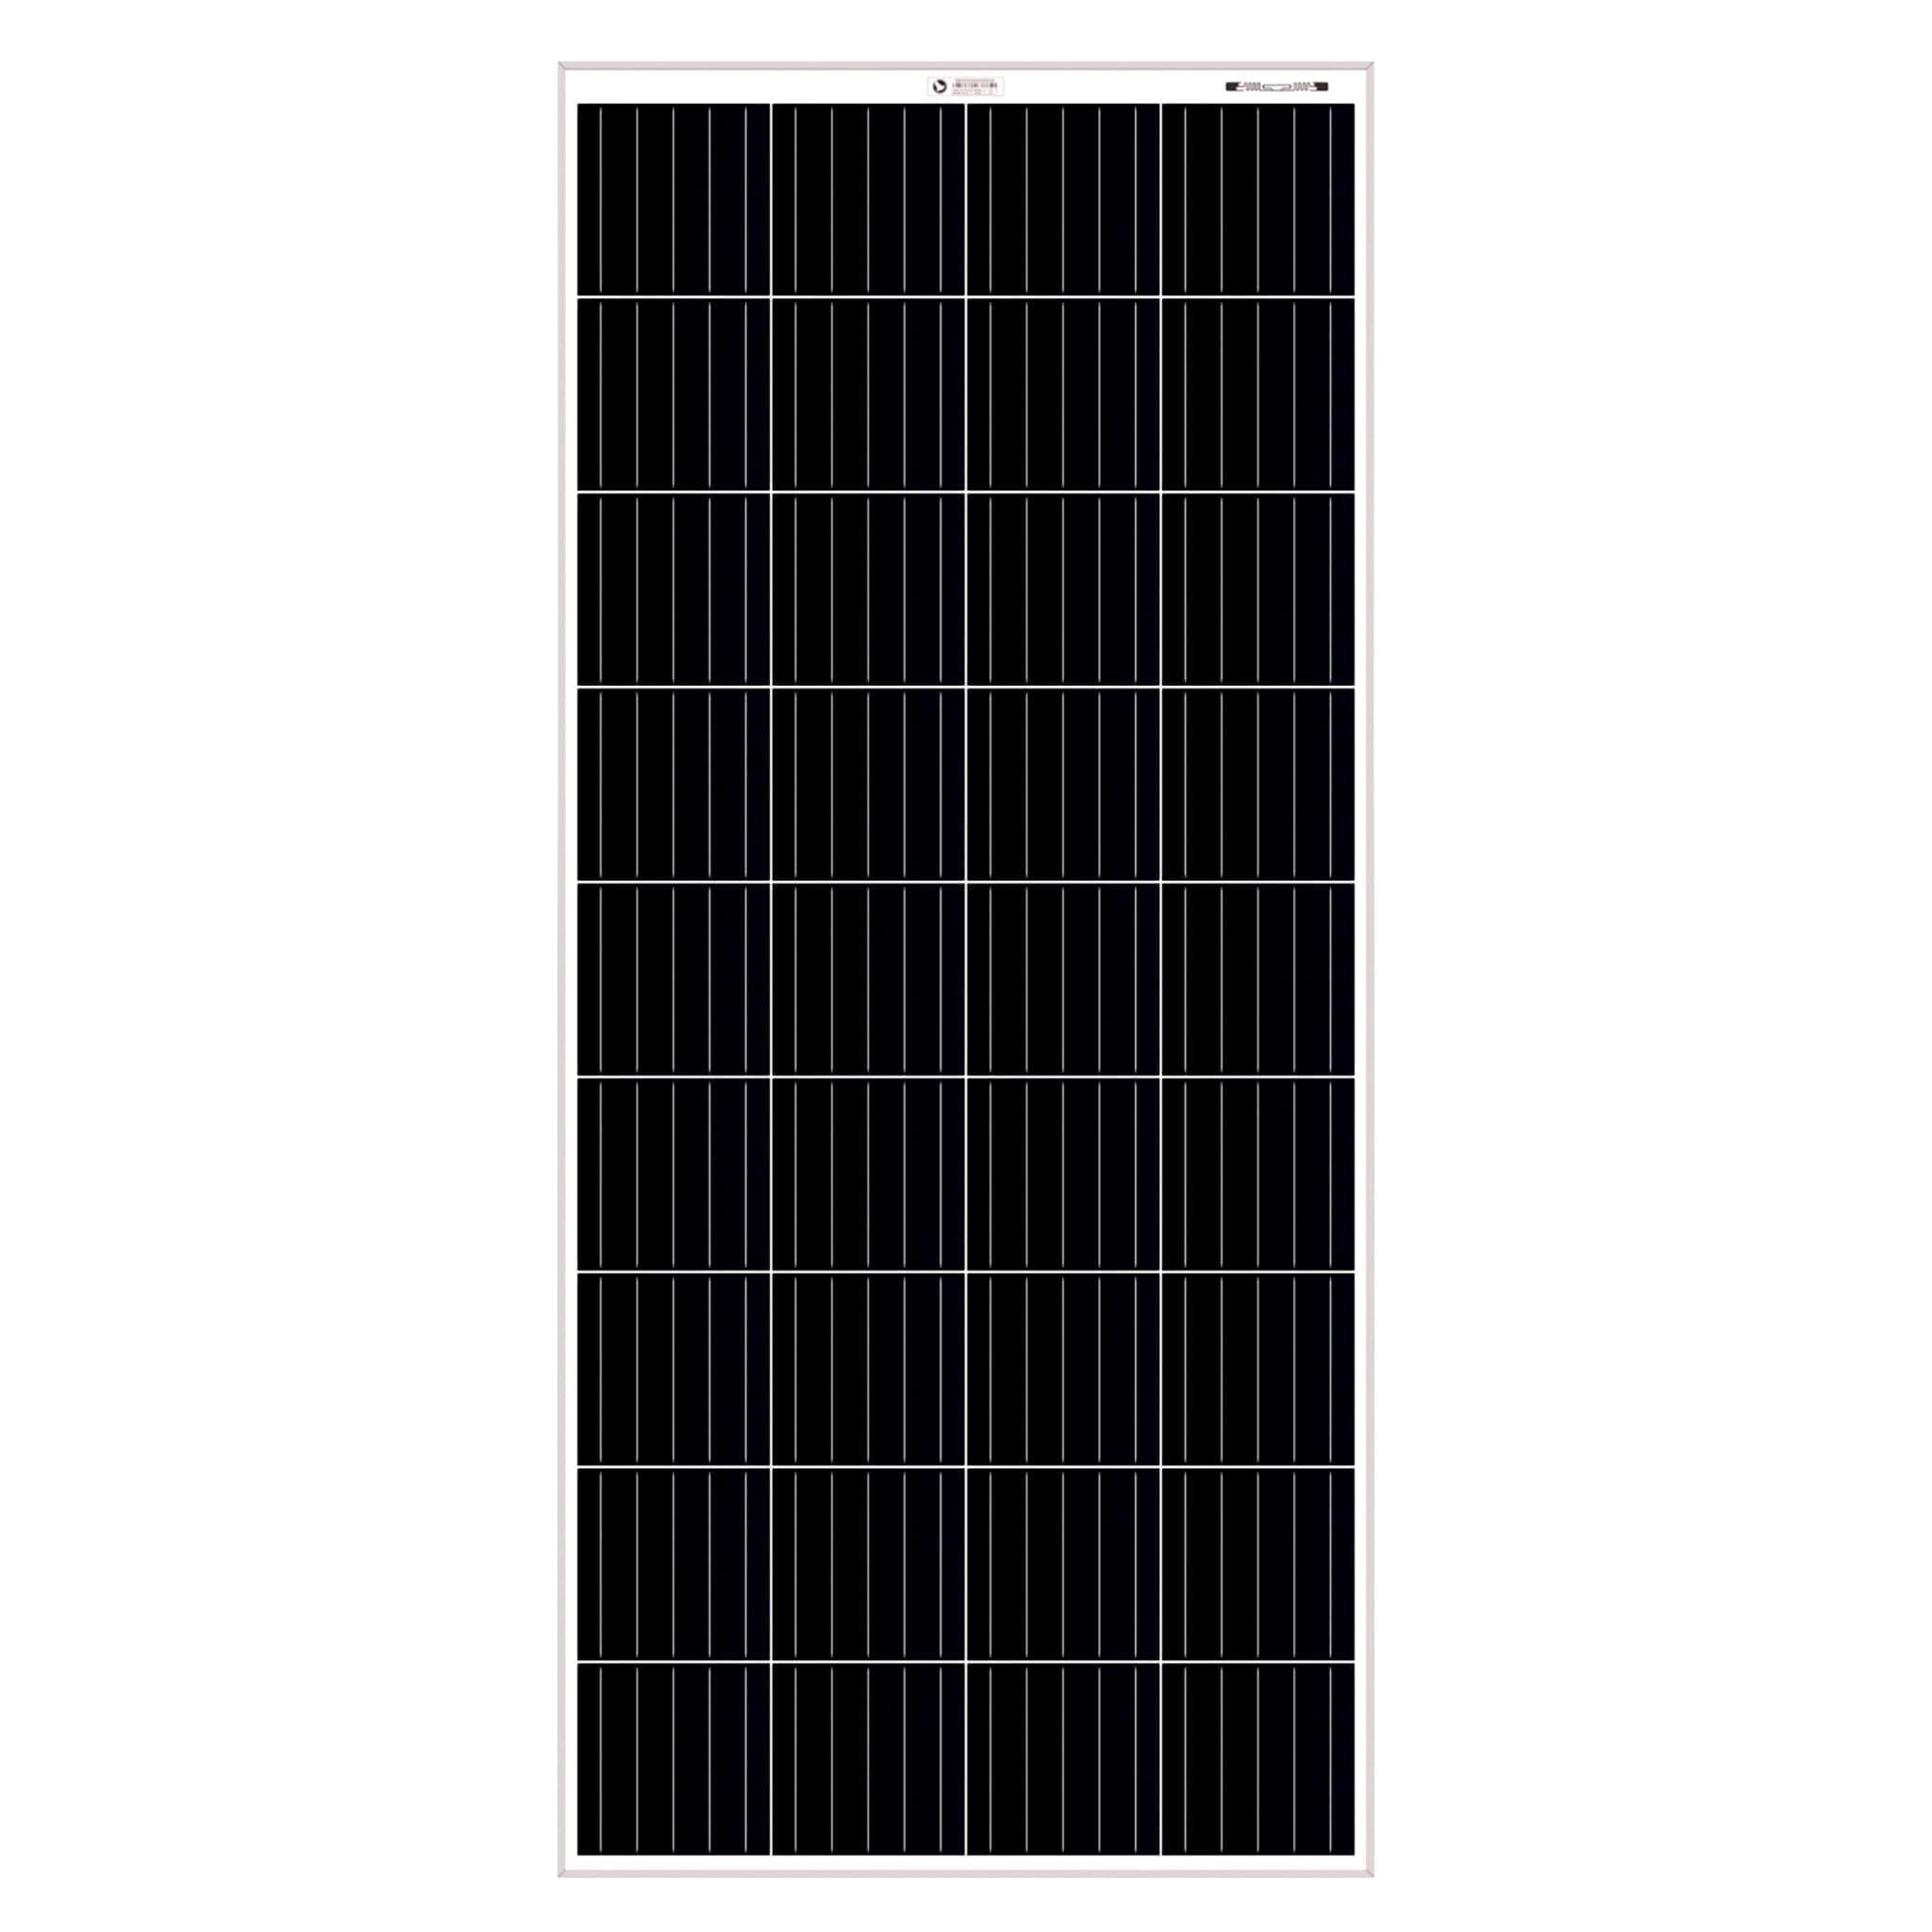 Bluebird 260 Watt 24 Volt Mono PERC Solar Panel